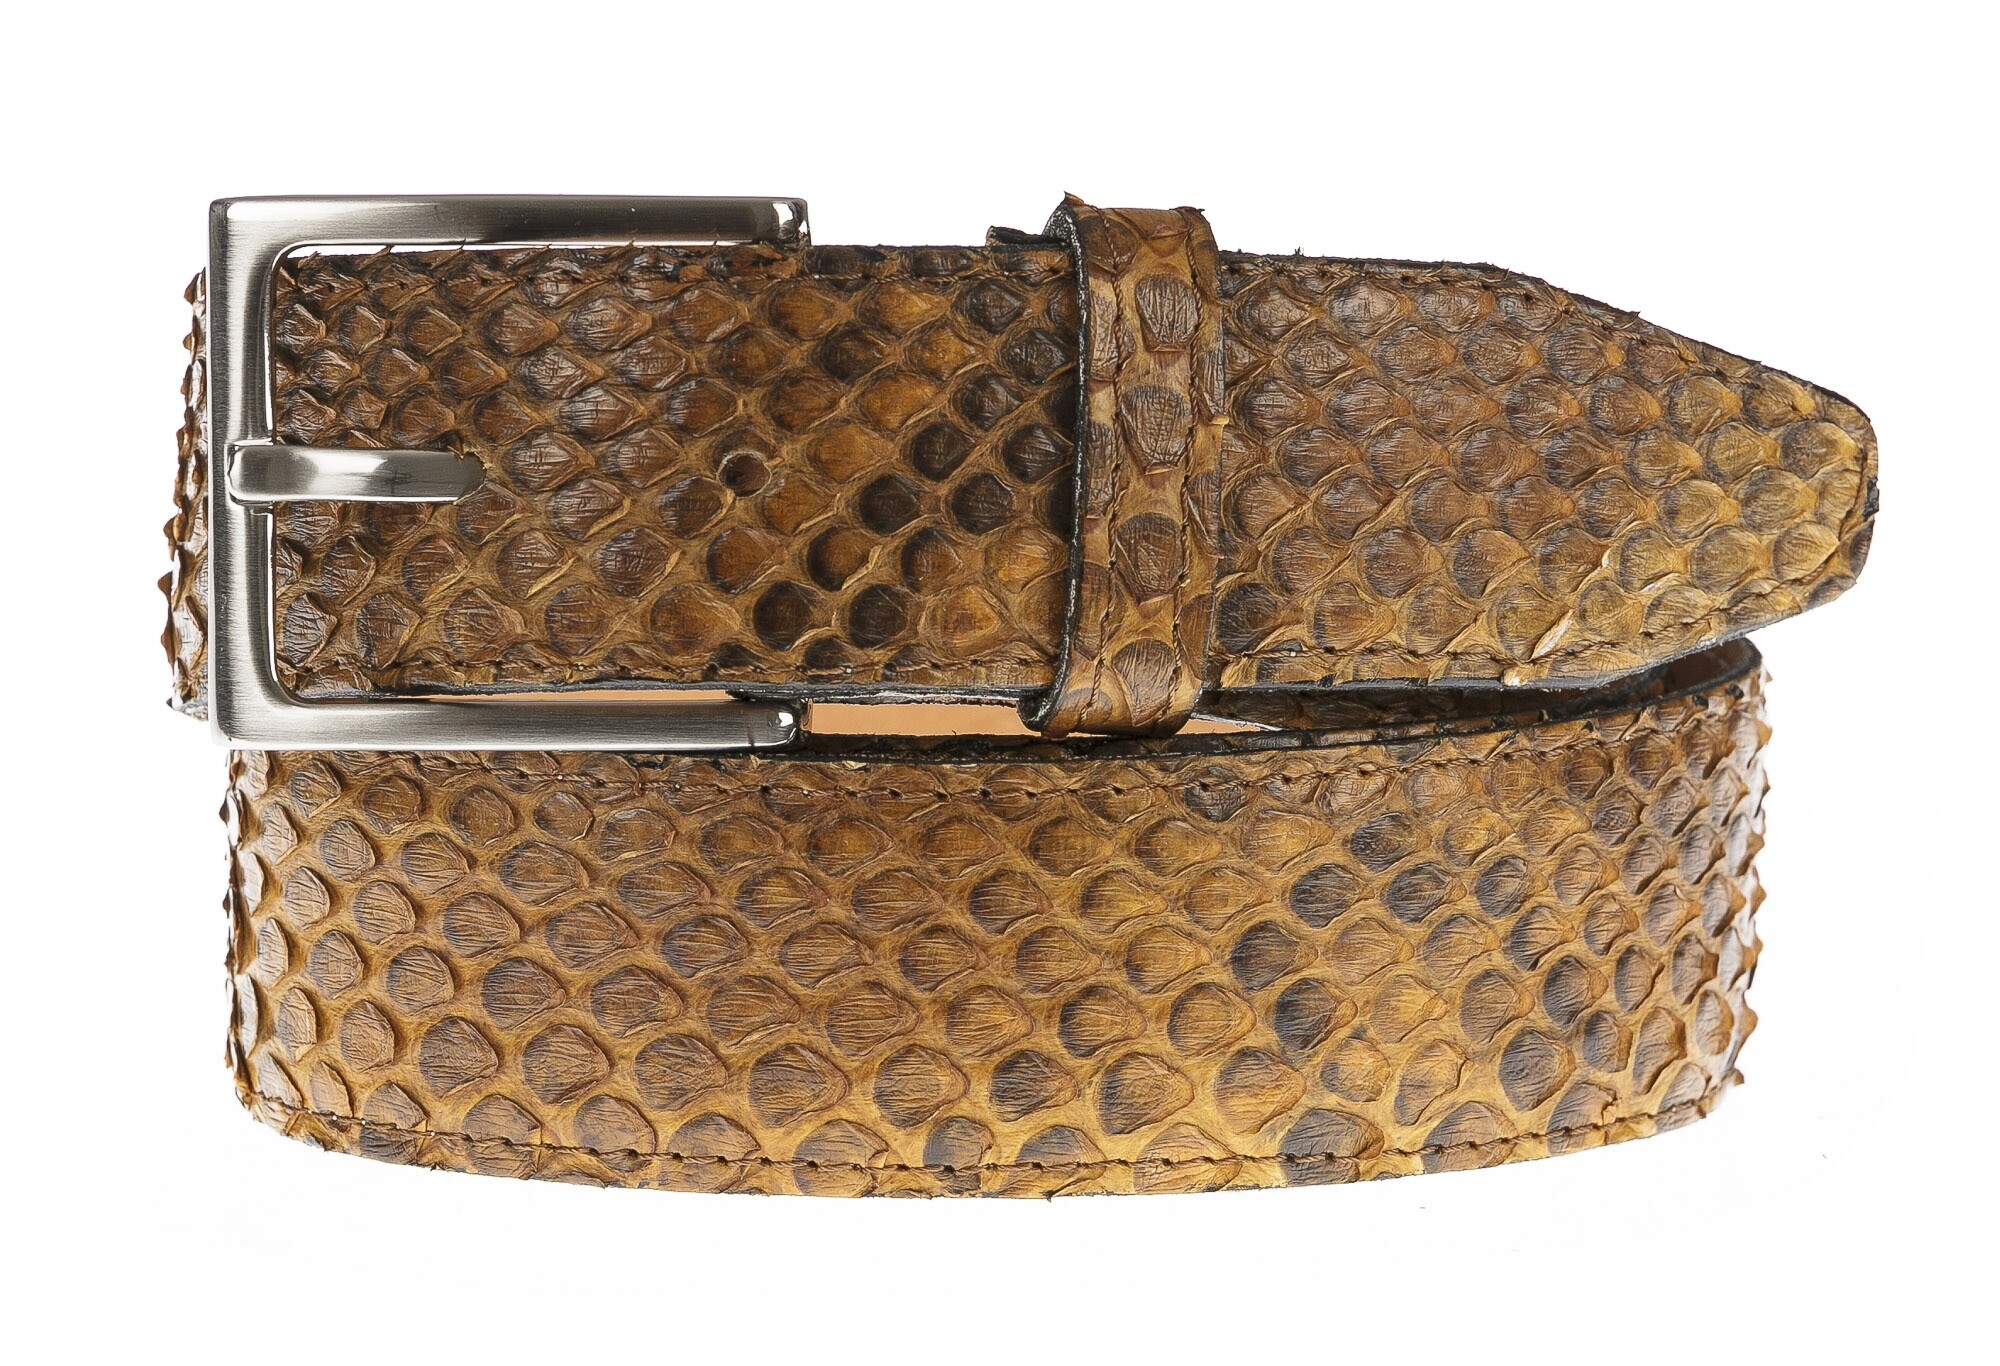 Cintura uomo in vera pelle di pitone CITES, GUATEMALA, colore MIELE,  CHIAROSCURO, Made in Italy, CINTURE